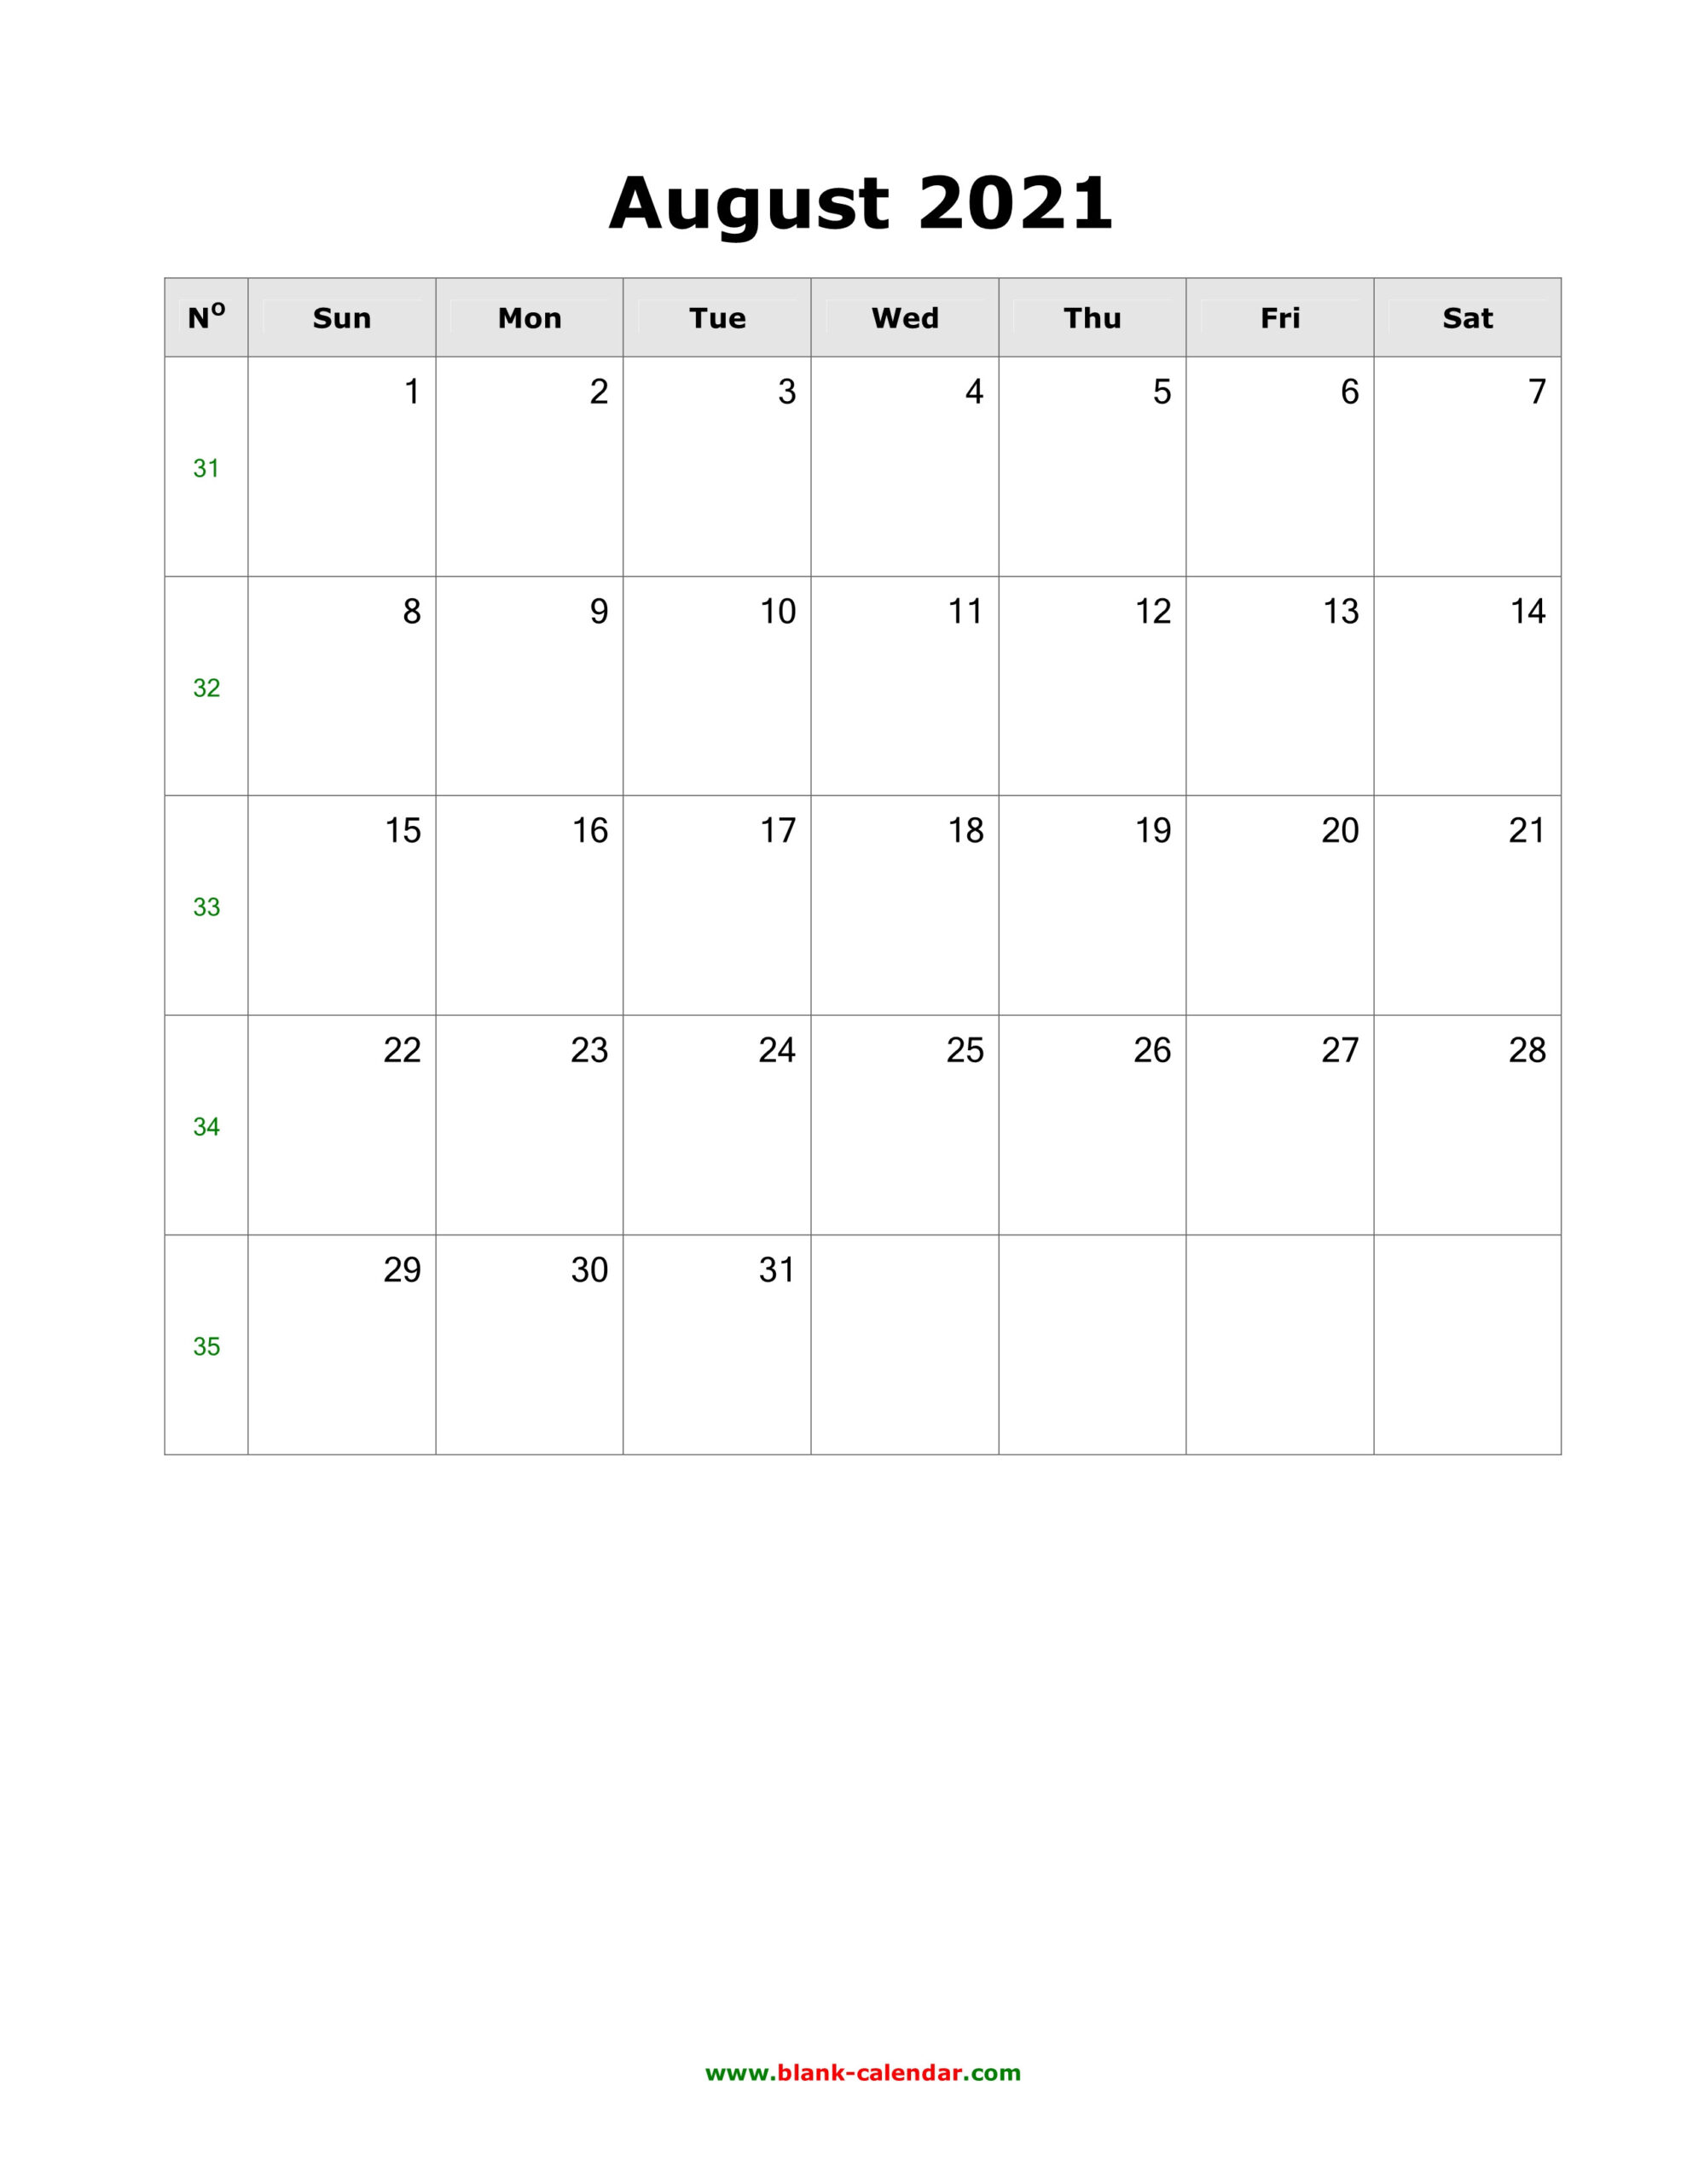 August 2021 Calendar Us - Holiday Calendar  August 2021 To December 2021 Calender